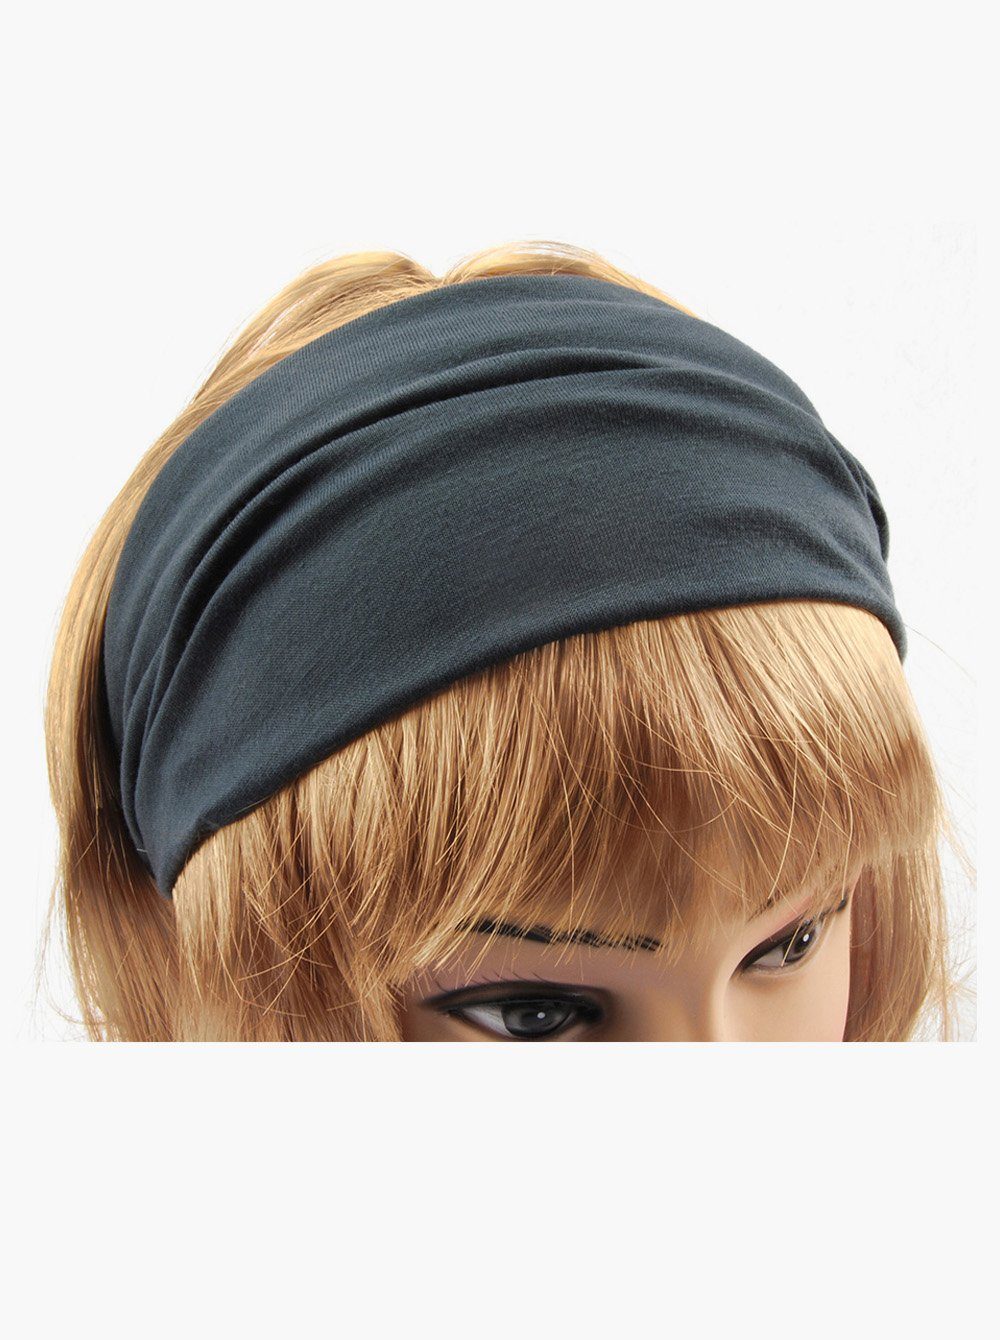 axy Haarband Damen Haarband Kopfband, Dunkelgrau Stirnband für Sport Yoga und Hairband